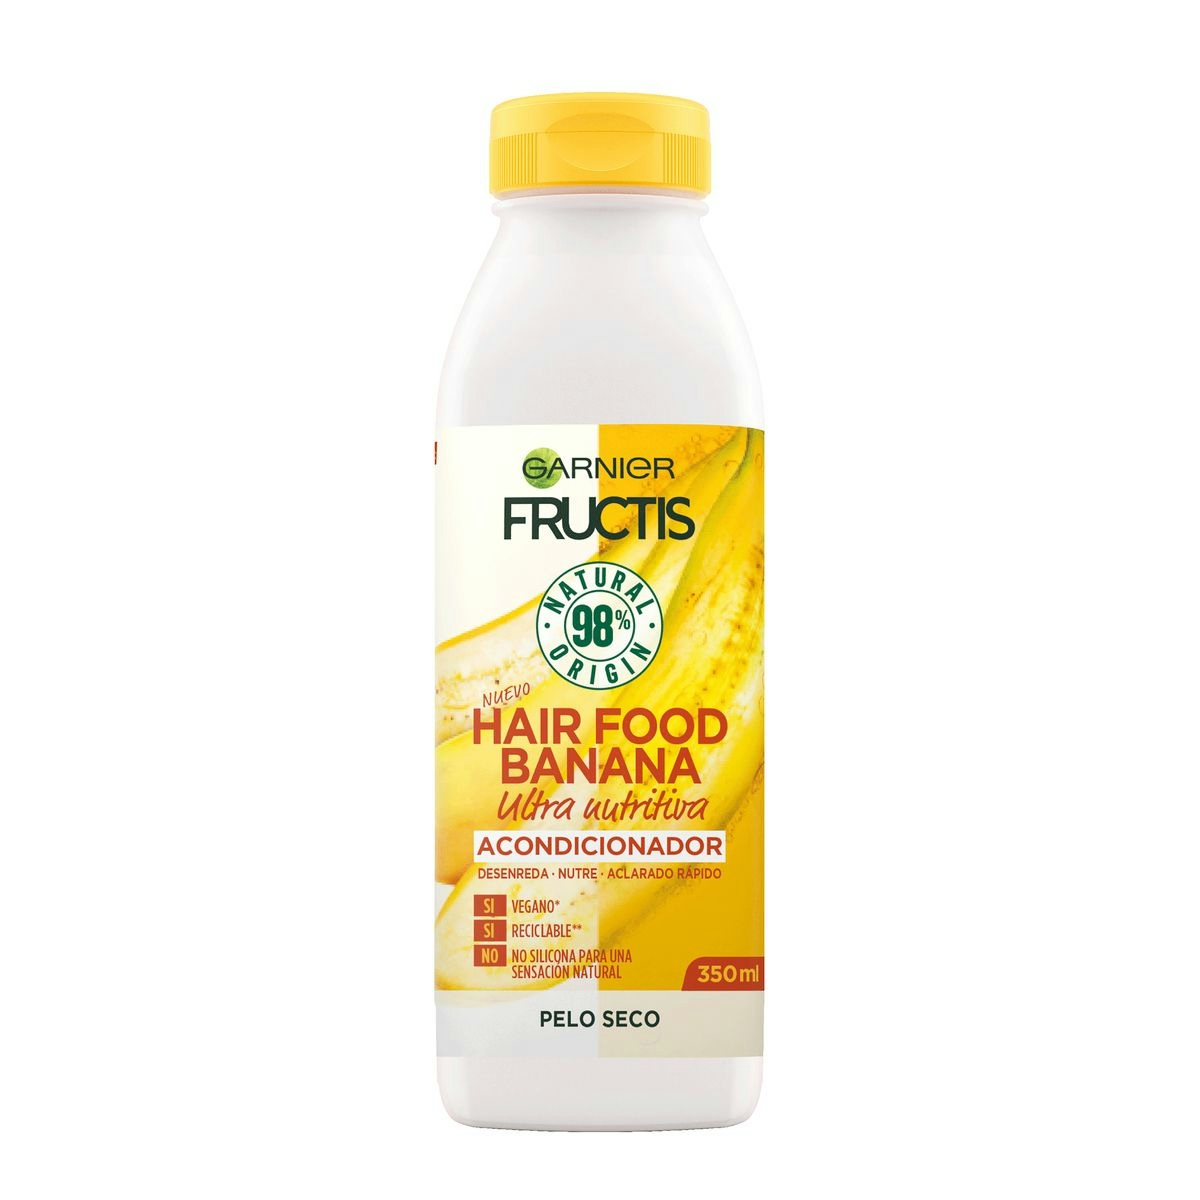 Acondicionador Nutritivo Banana FRUCTIS Hair Food 350 ml